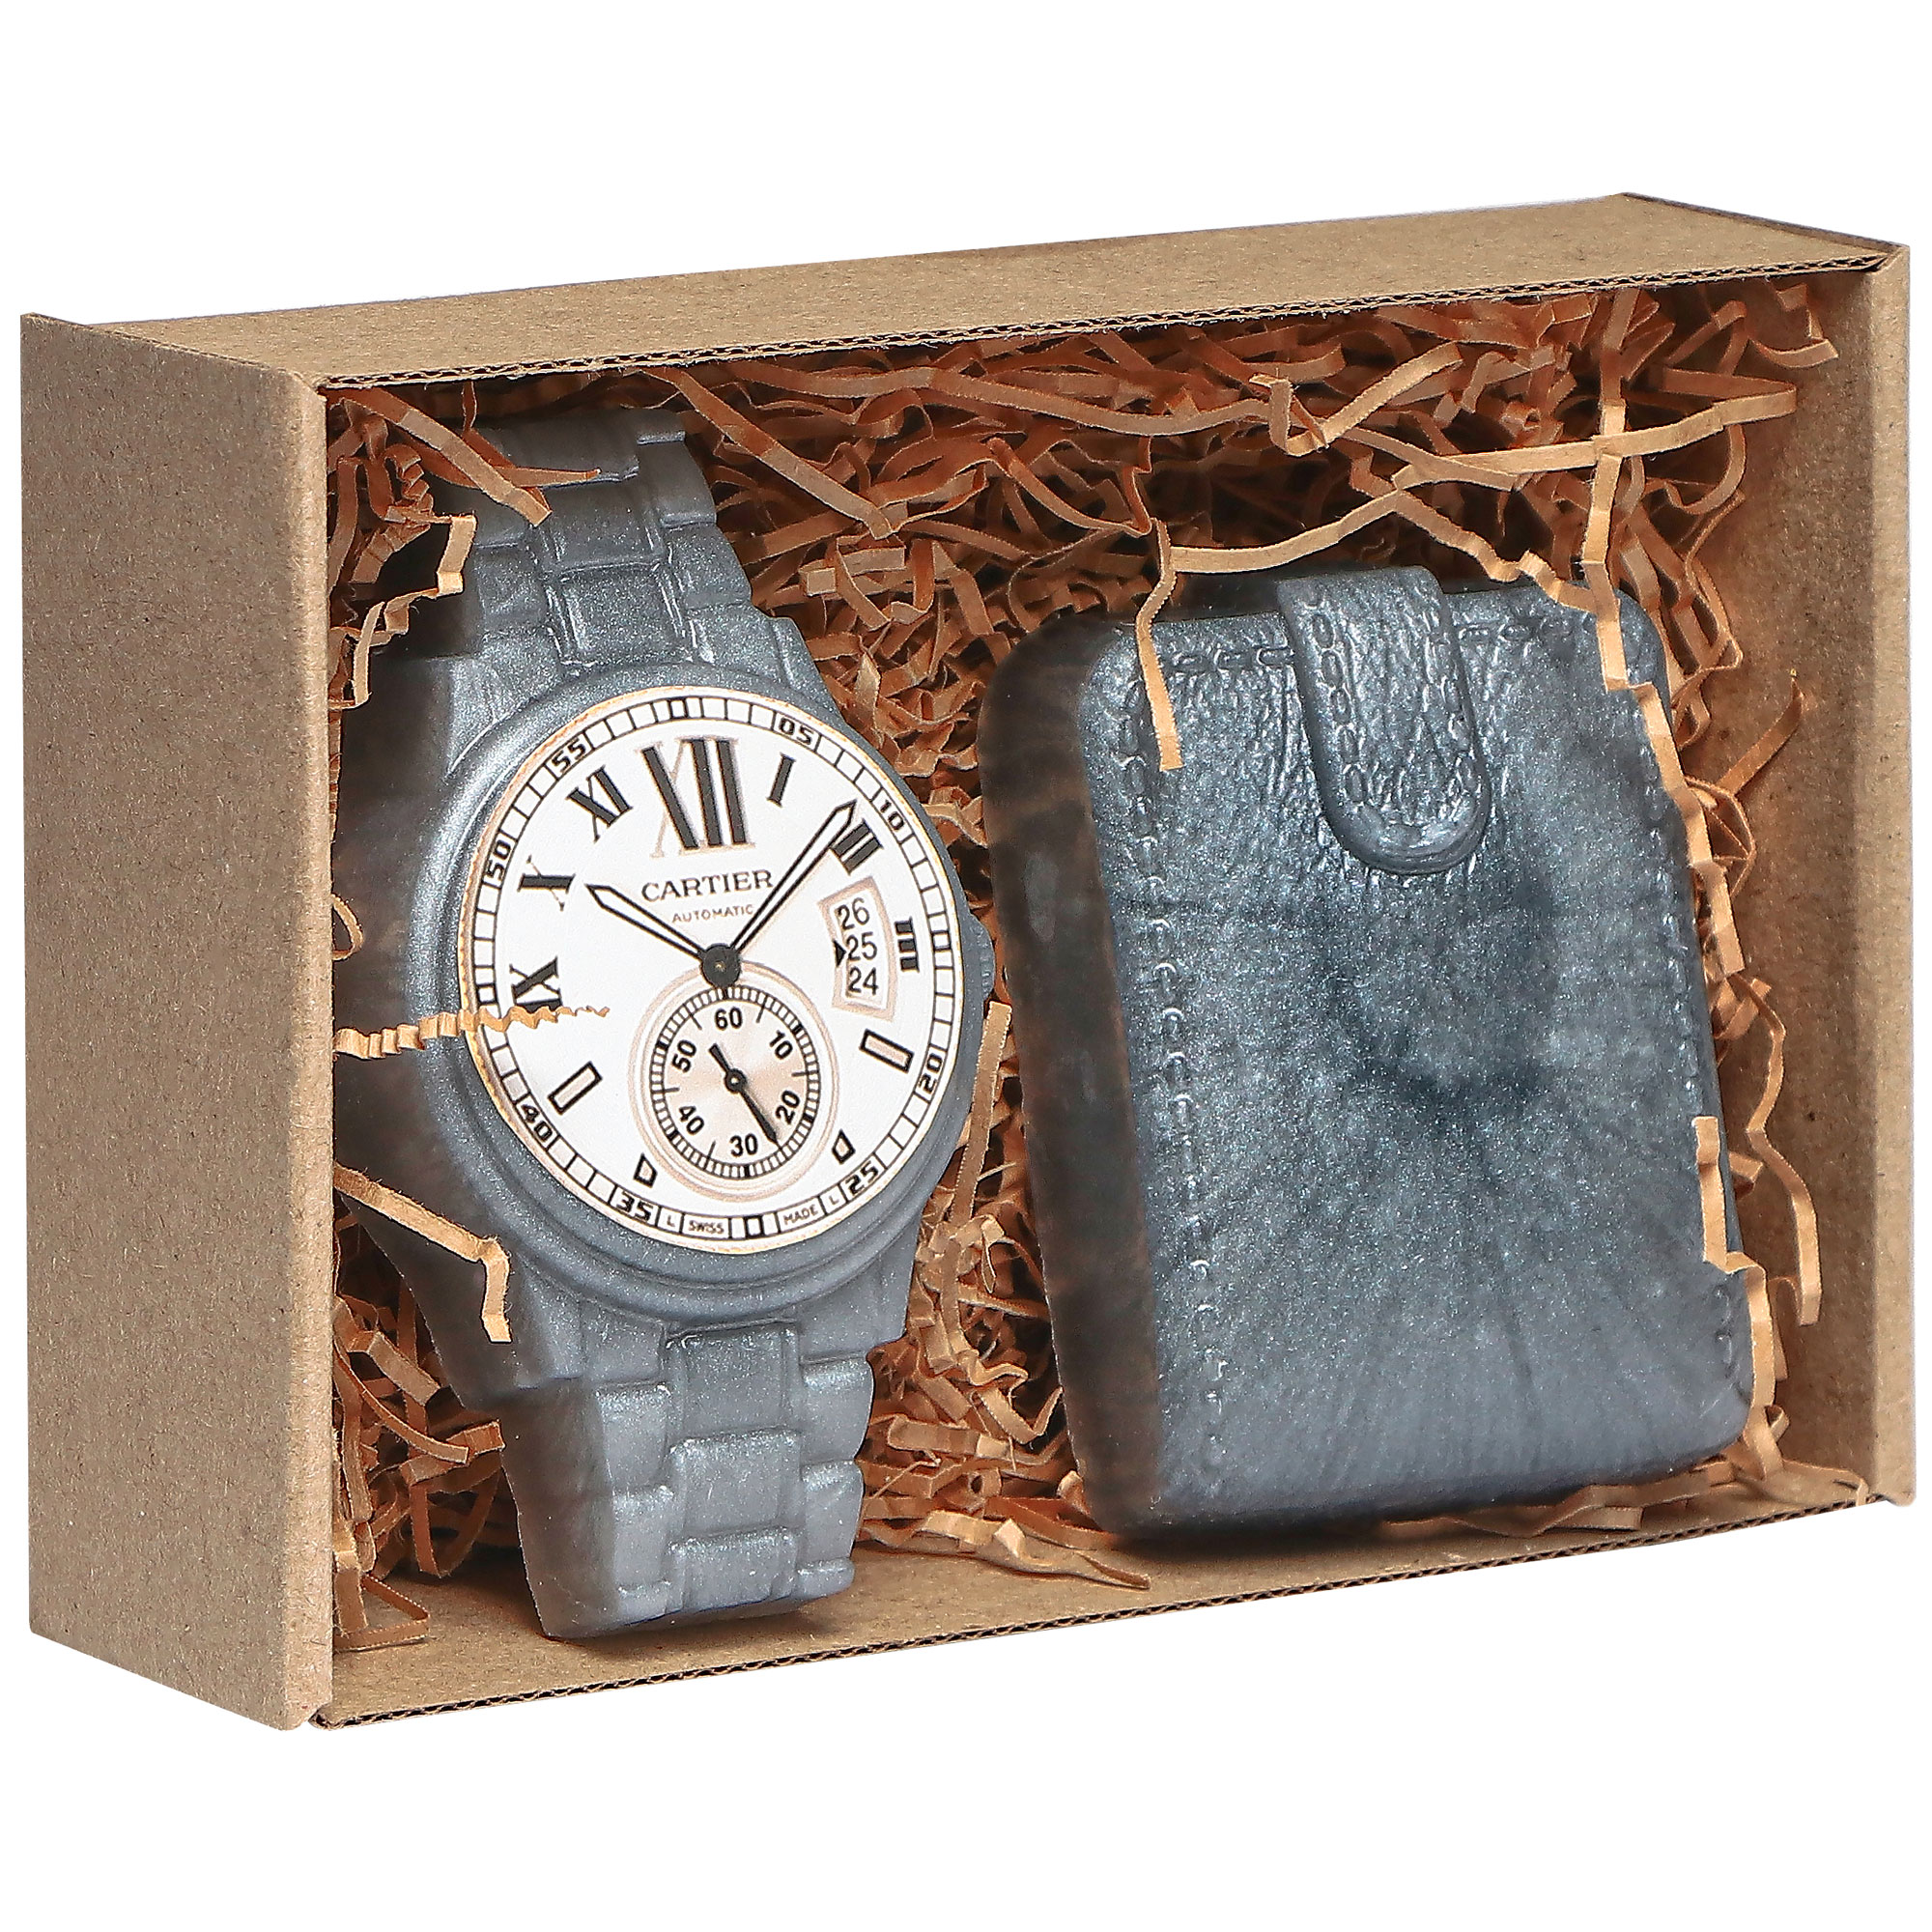 Подарочный набор из мыла Carolon ручной работы часы, 2 предмета - фото 3